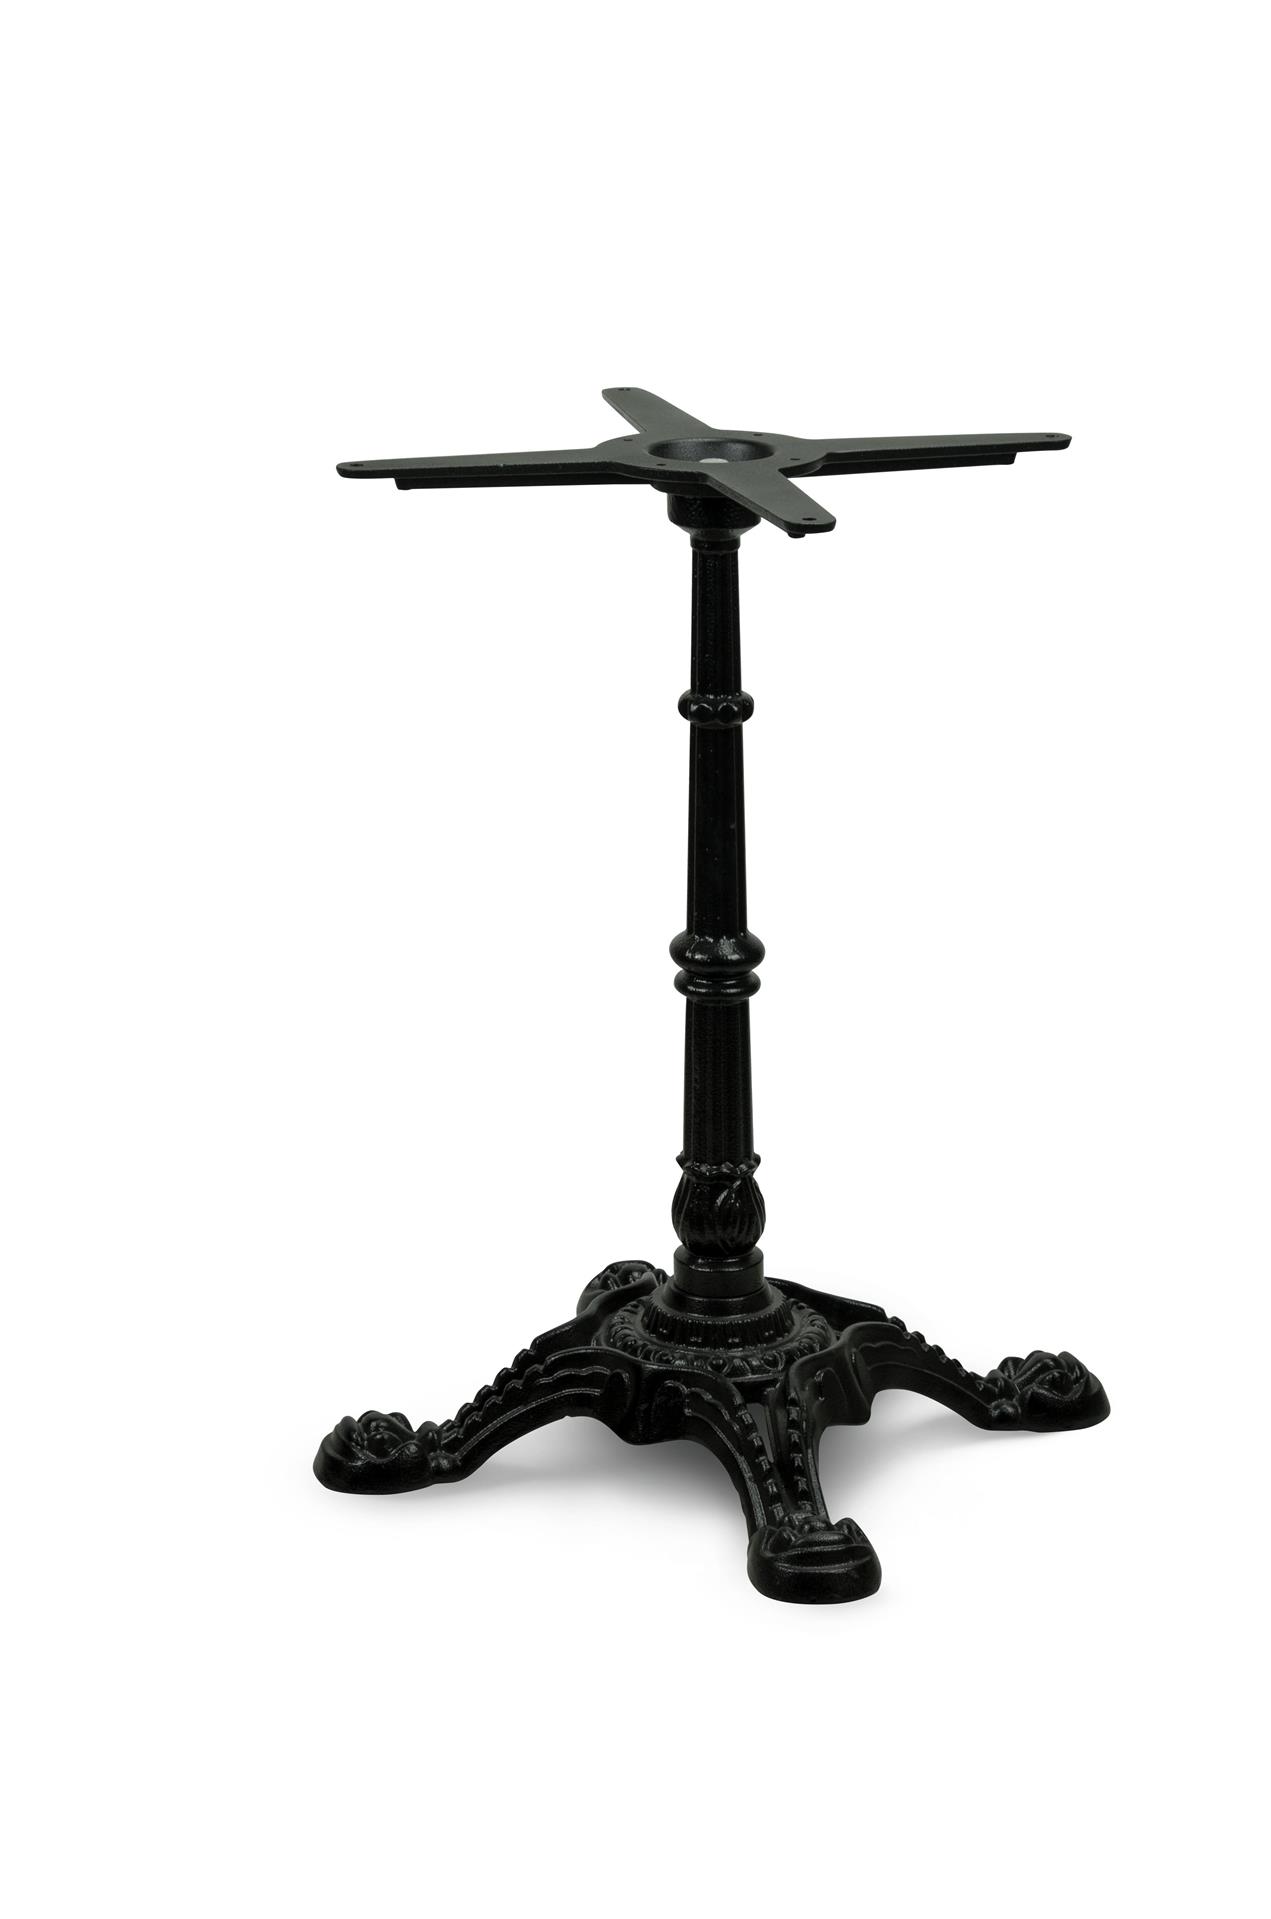 Tischgestell PJ7018 aus Gusseisen, schwarz, vierzehig, antikes Design